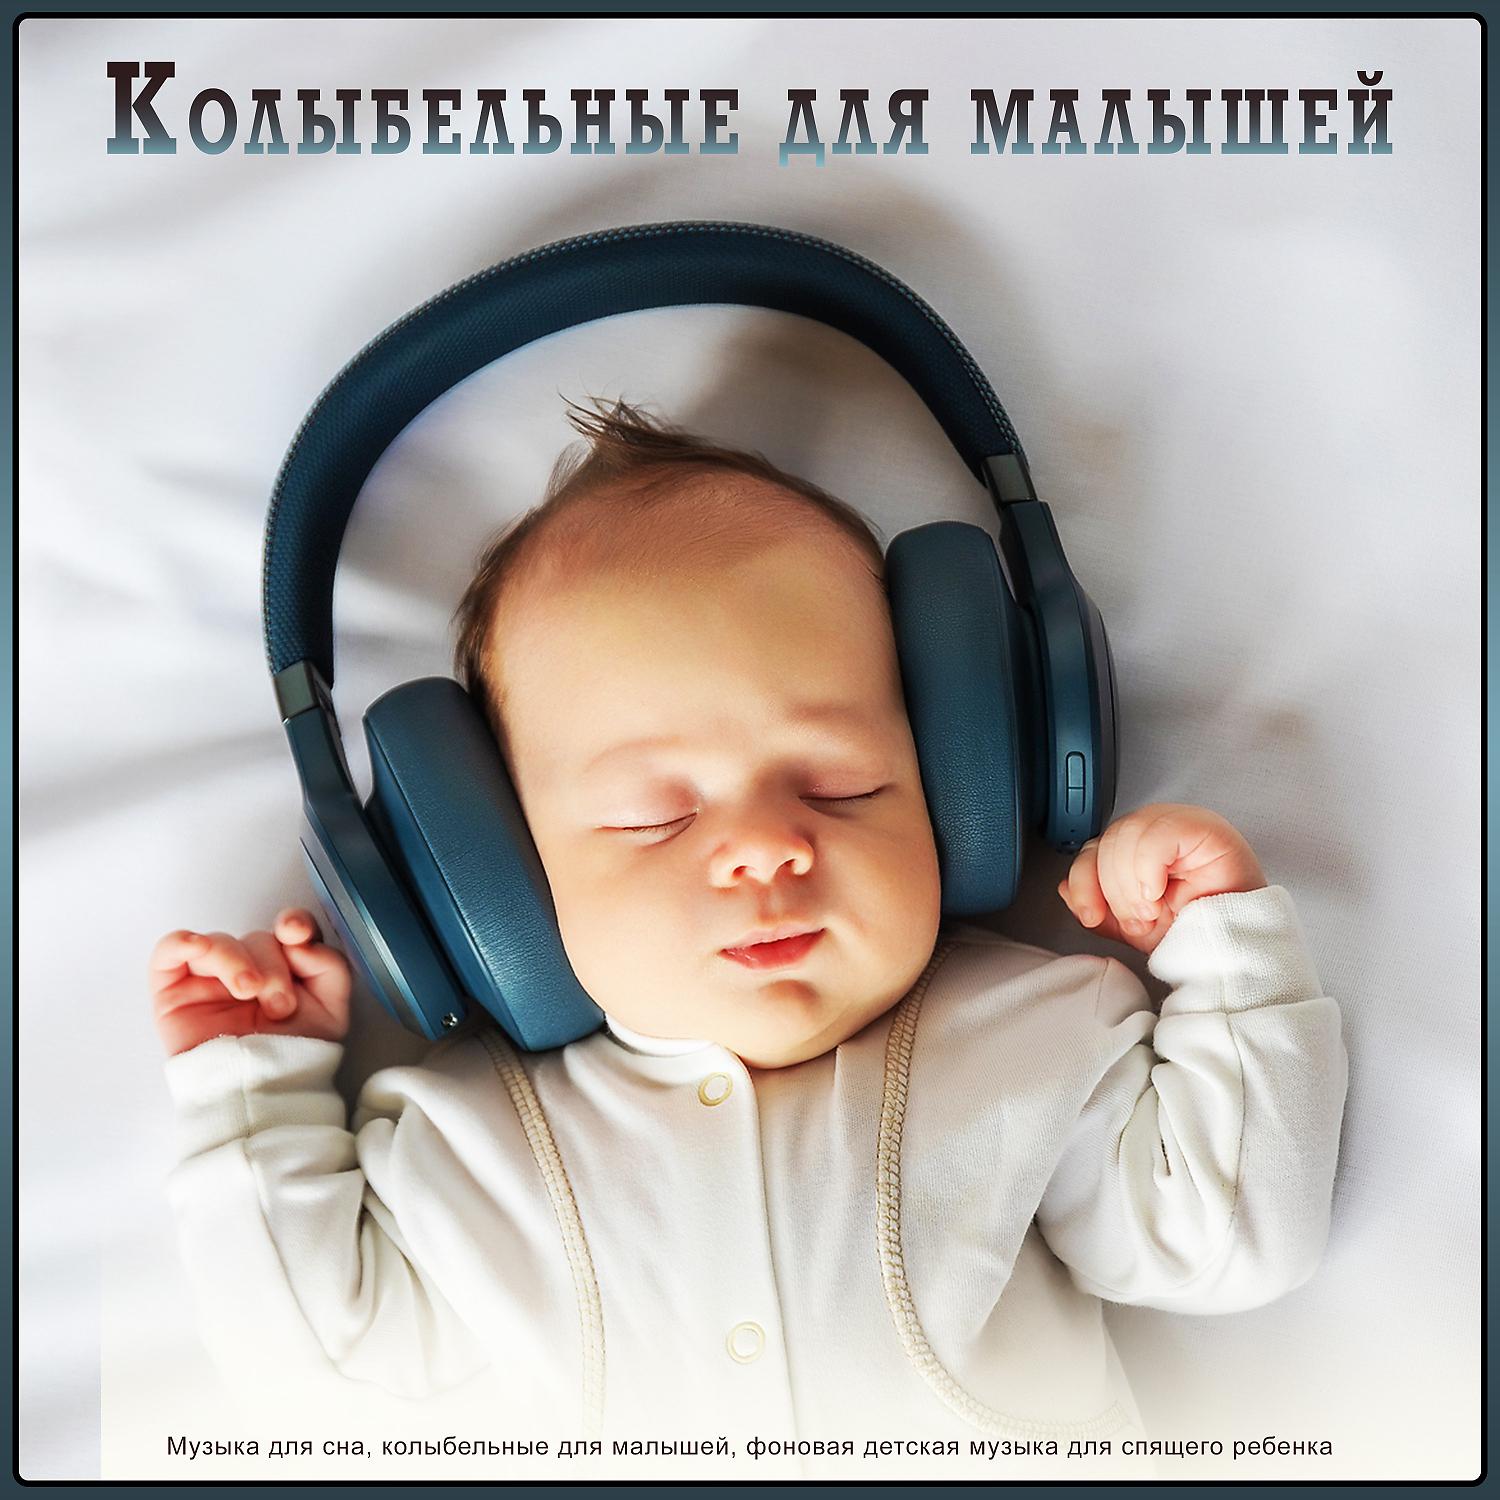 Слушать спокойно музыку для детского сна. Музыка для сна младенца. Музыка для сна для малышей. Мелодии для засыпания малышей. Колыбельная для малышей успокаивающая.